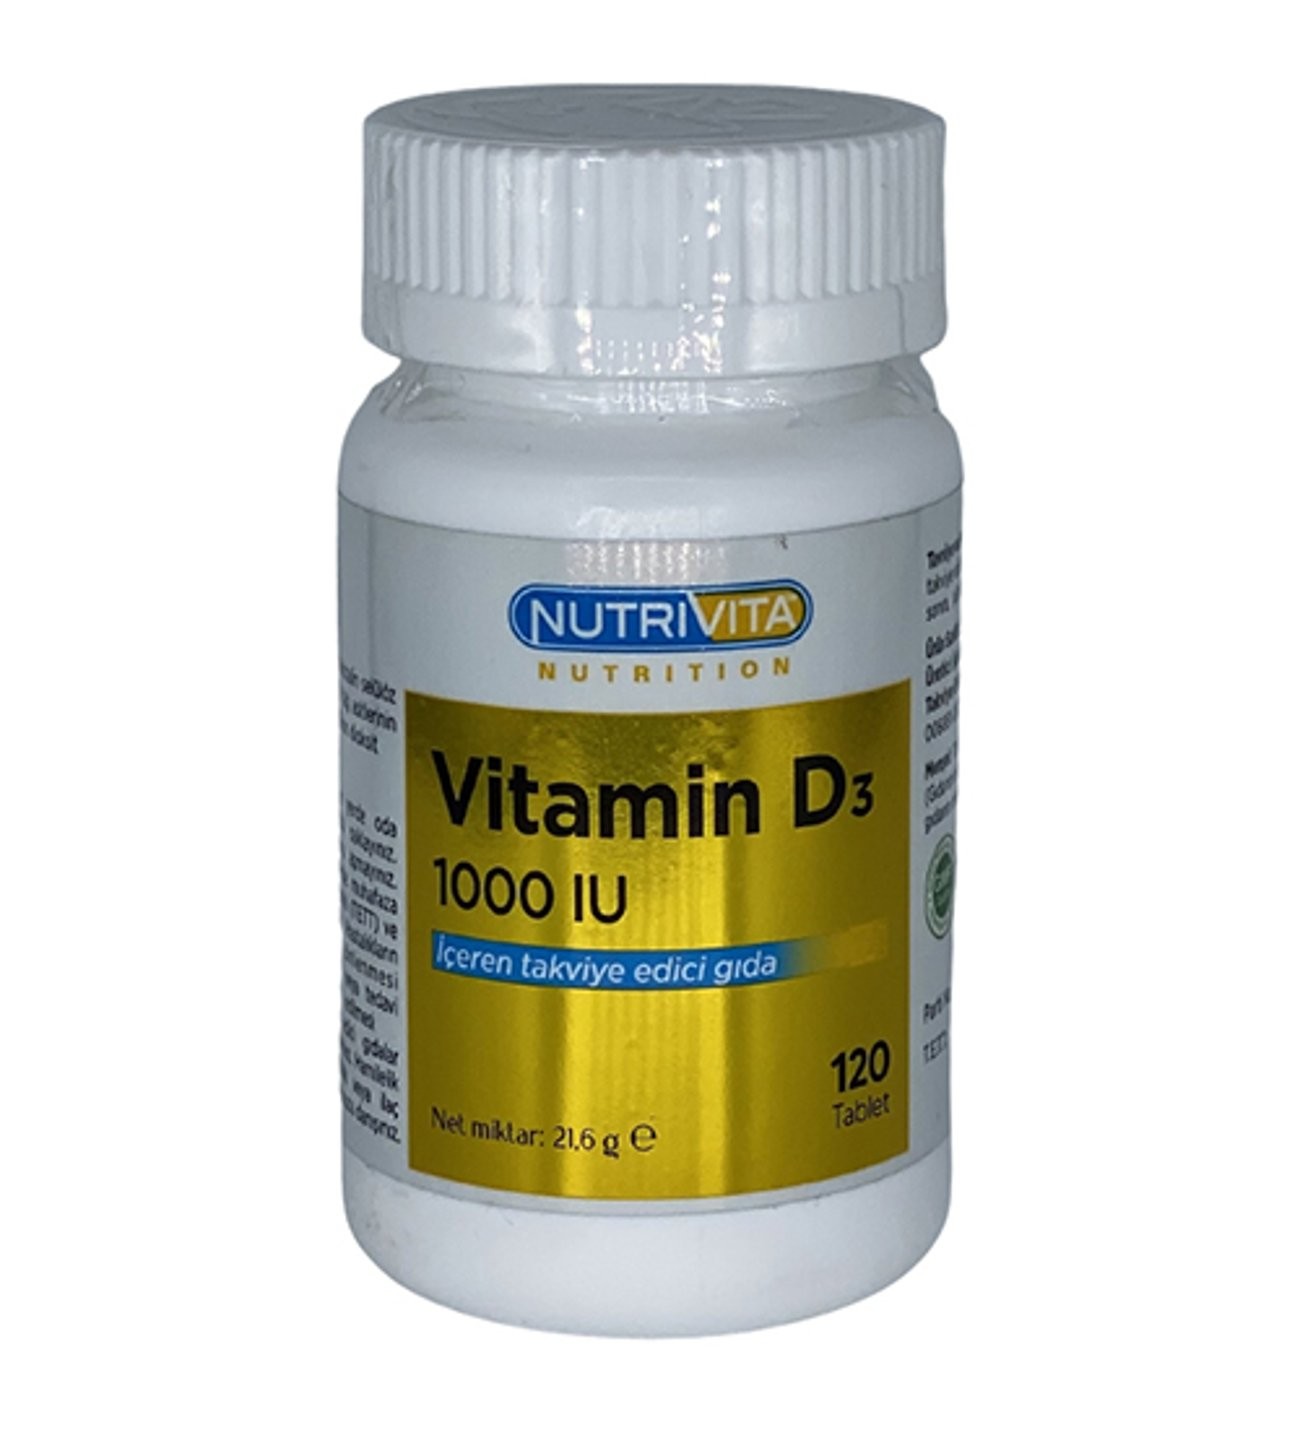 Nutrivita Vitamin D 1000 iu 120 tablet